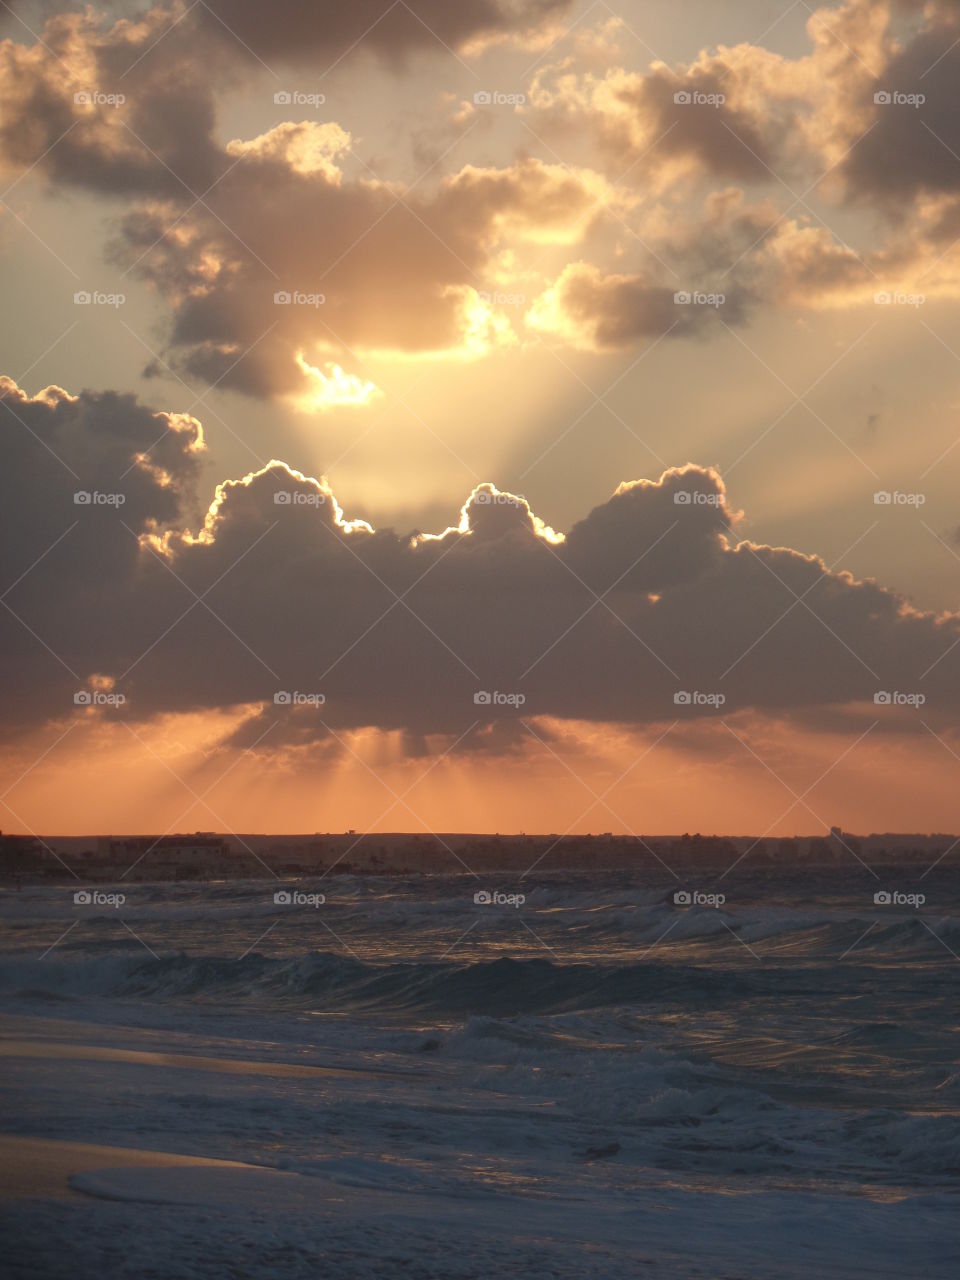 Sunset - Sea